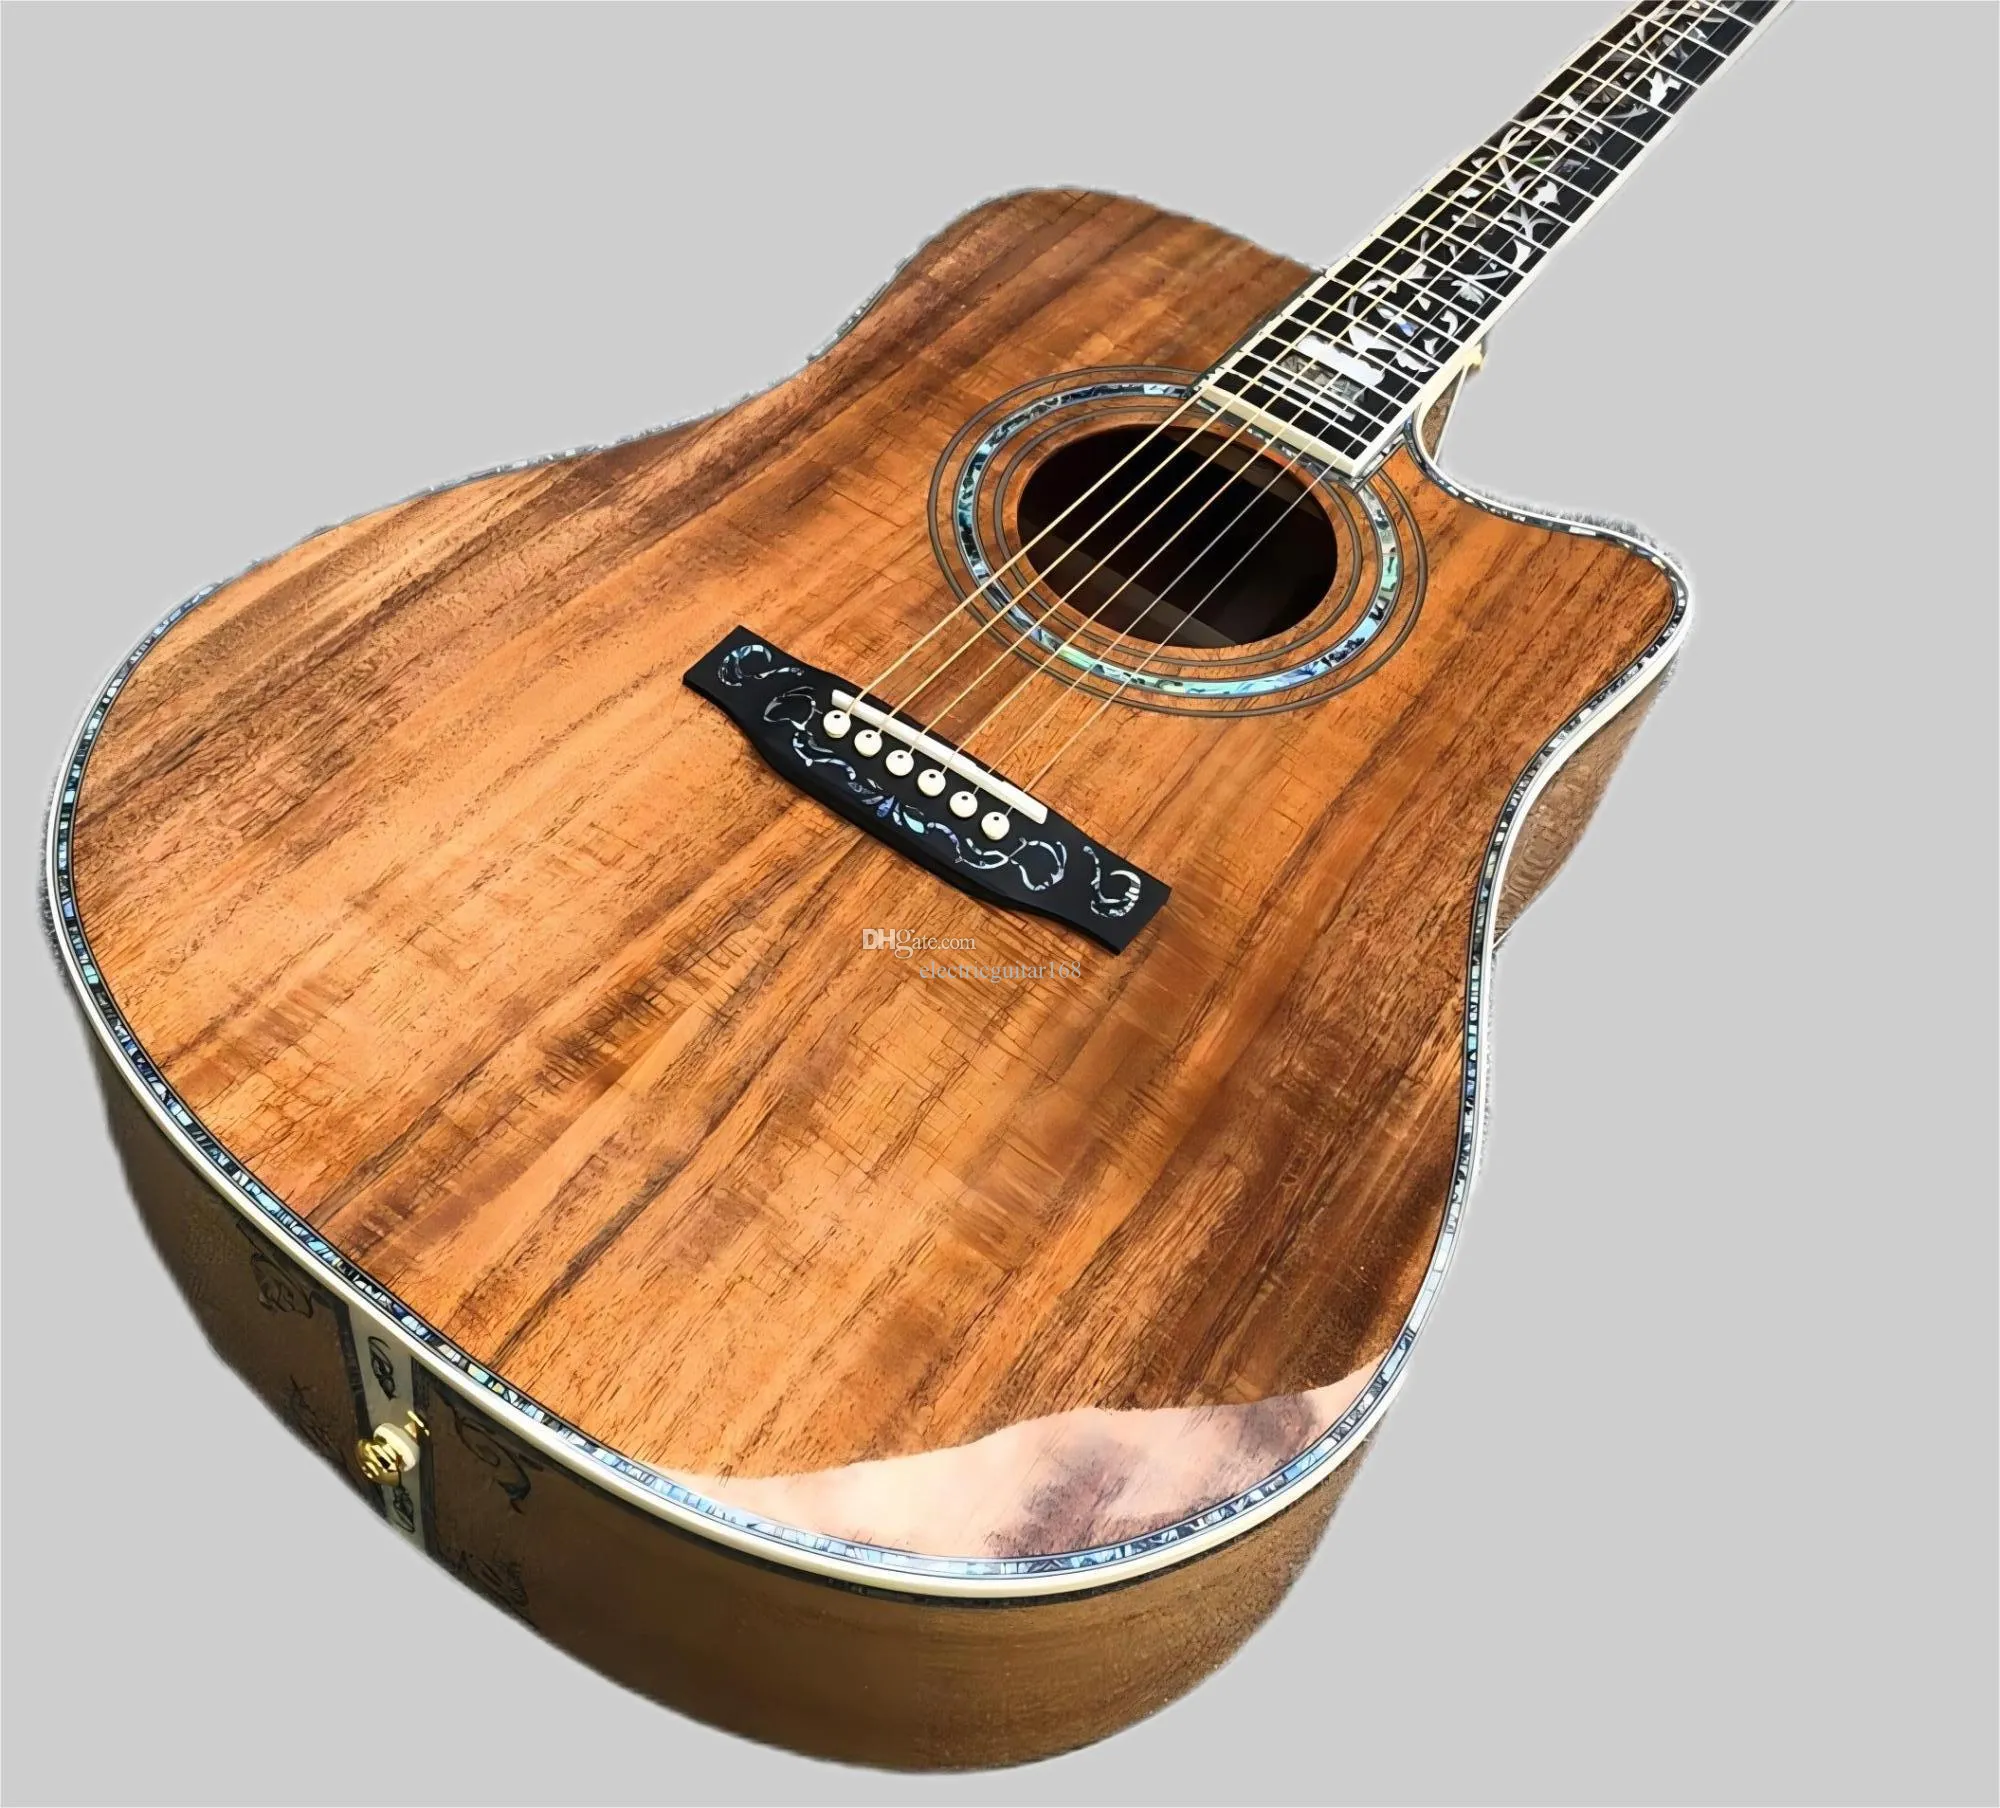 Cutaway All KOA Wood 41 pollici Chitarra acustica stile D, inserti in abalone di alta qualità Tastiera in ebano Guitarra